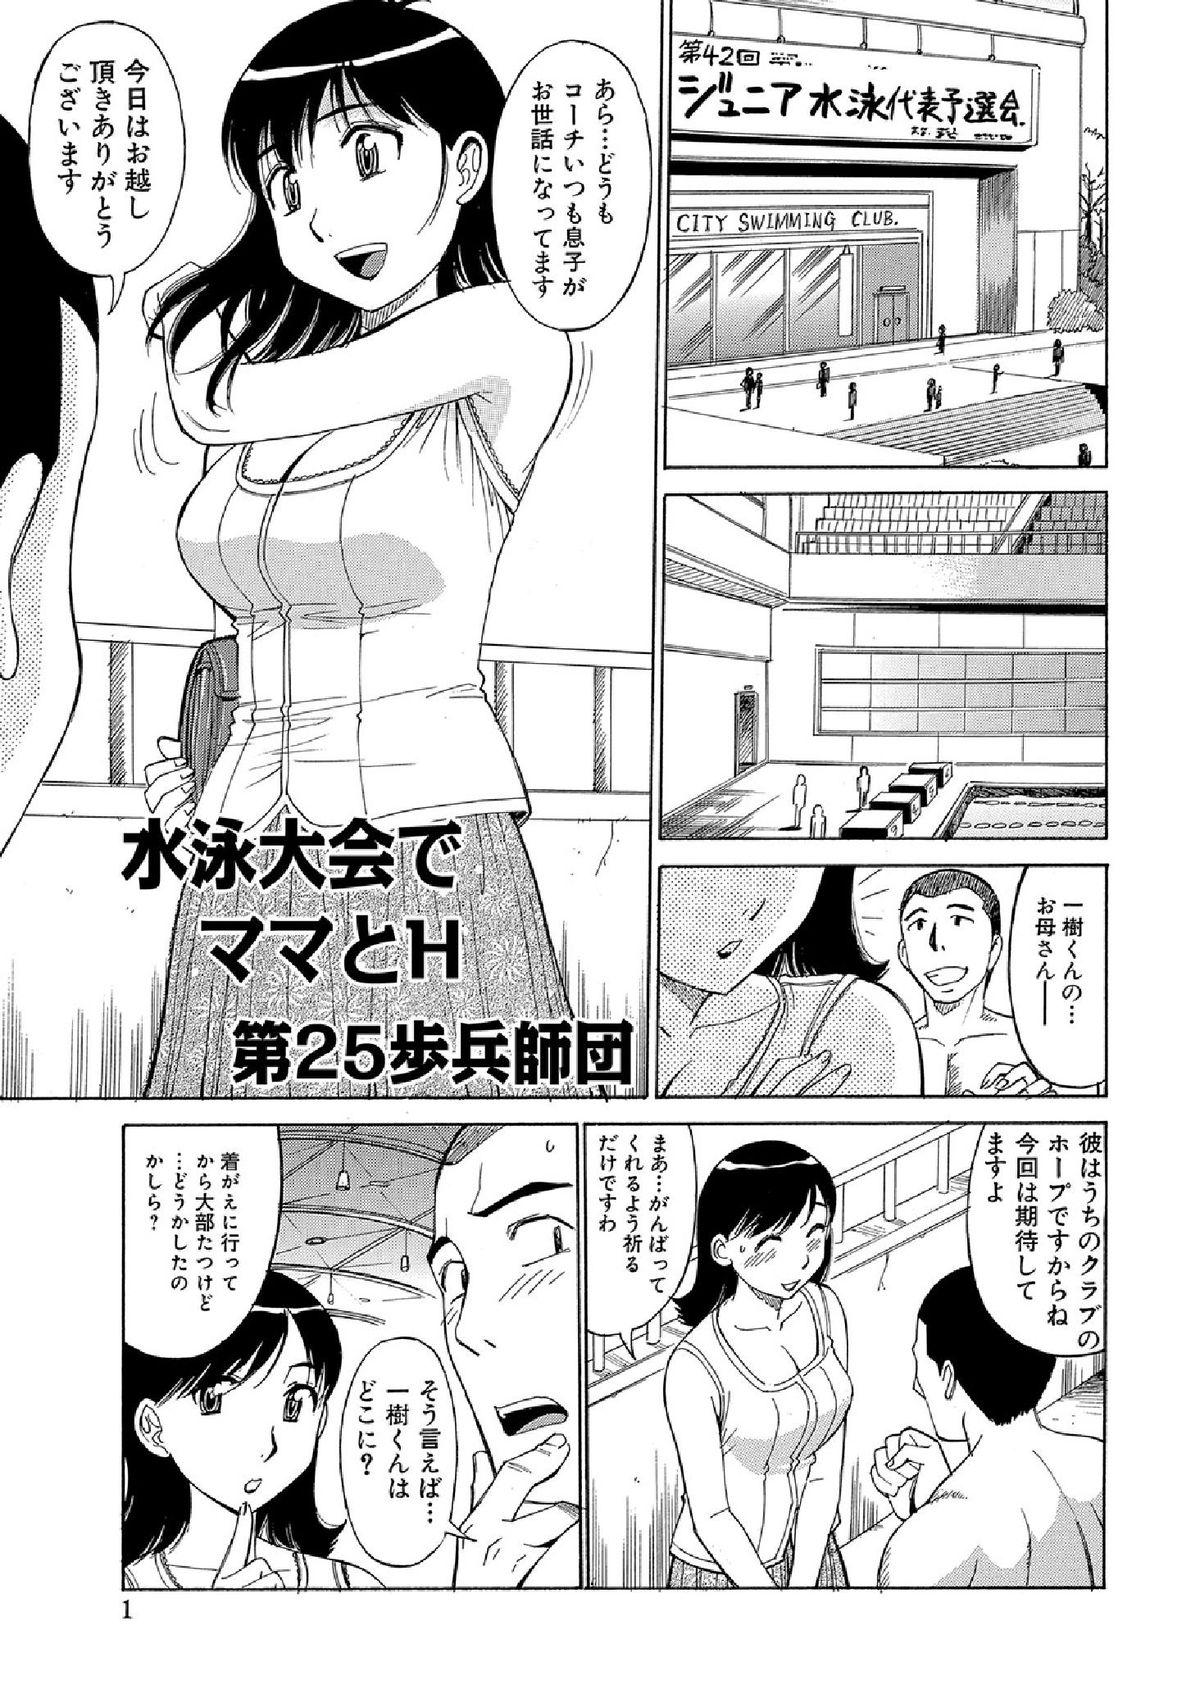 WEB Han Comic Geki Yaba! Vol.52 282